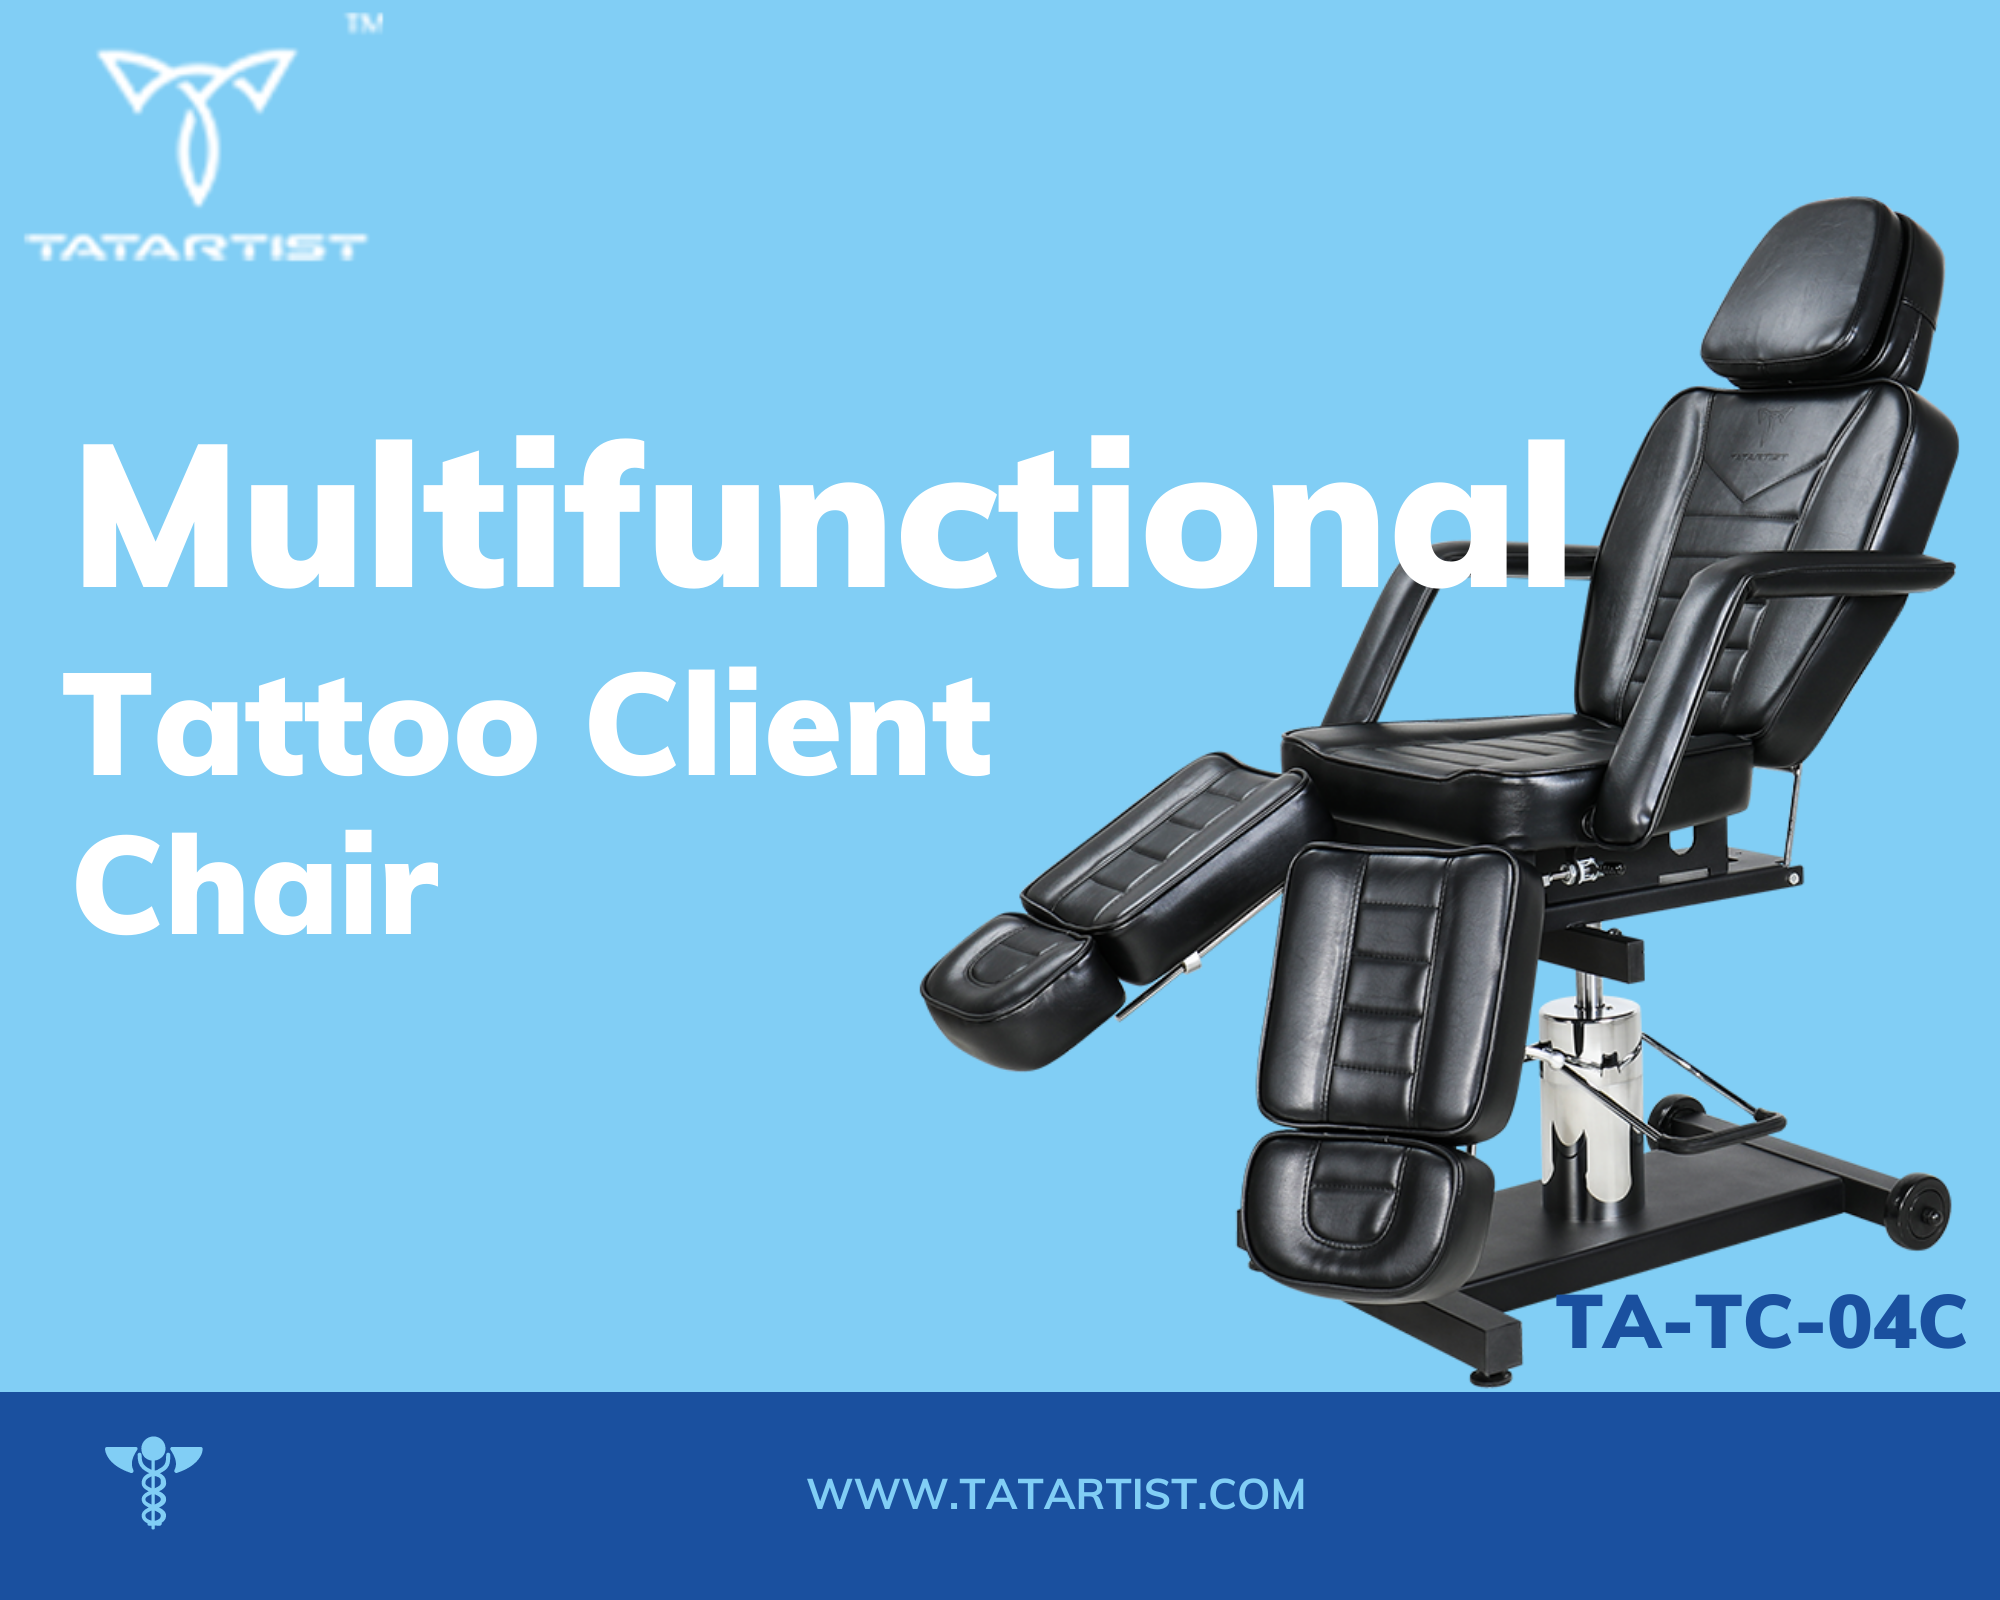 New Tattoo Client Chair Coming Soon TA-TC-04C